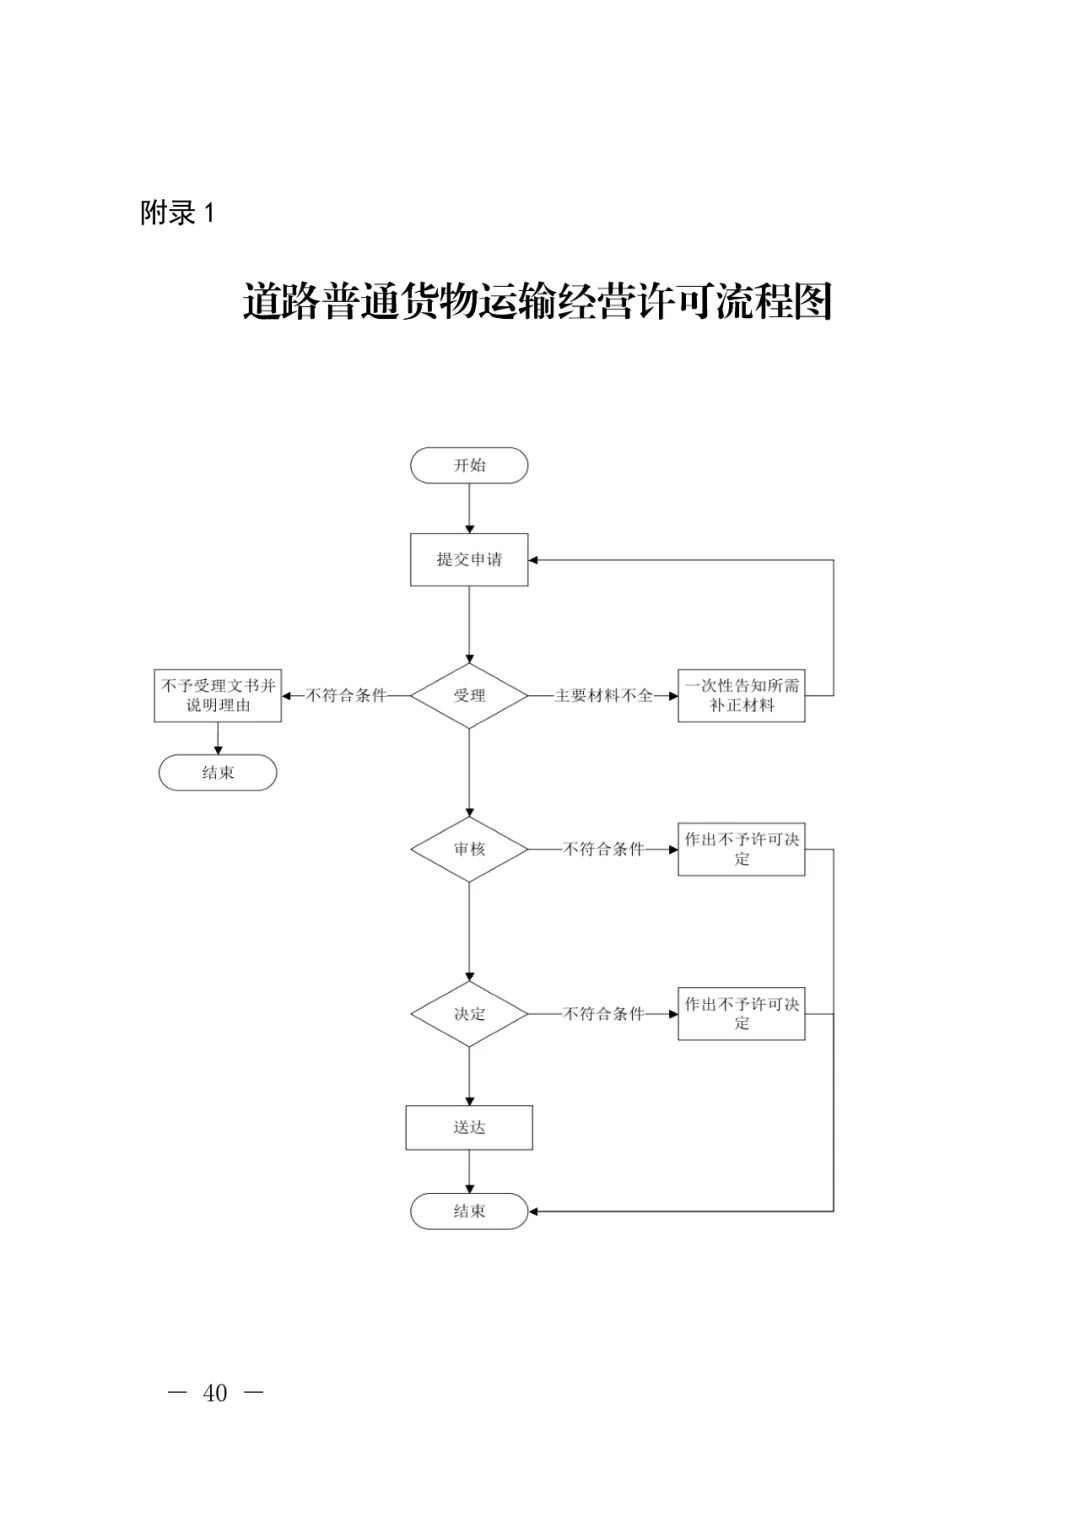 【浙江】关于开展网络平台道路货物运输经营管理工作的通知(图40)